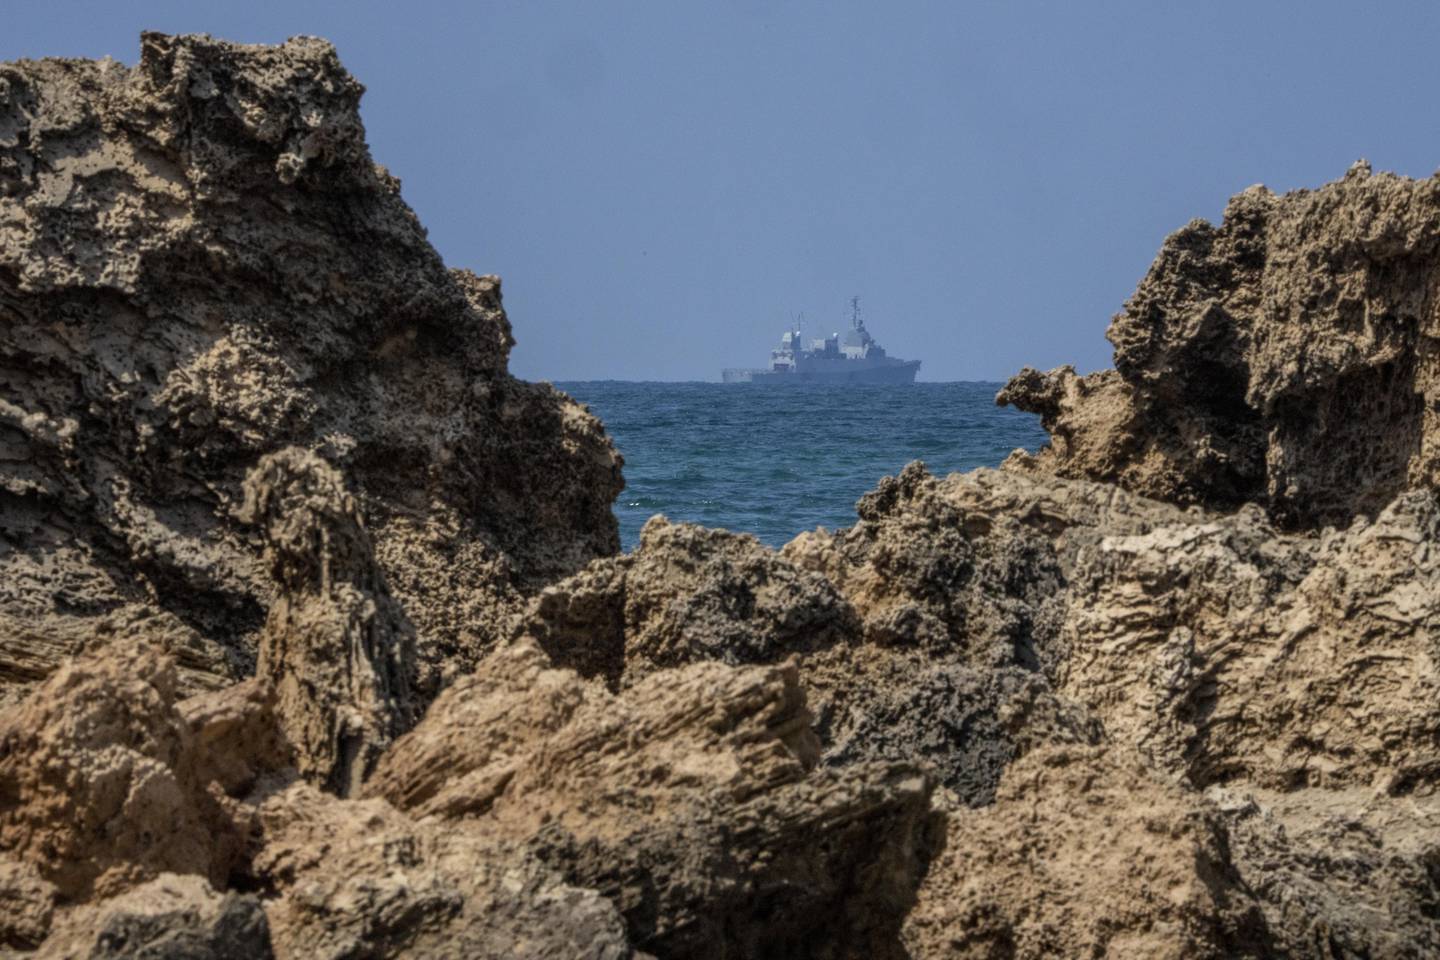 Et israelsk marinefartøy patruljerer Middelhavet utenfor kysten av Hadera søndag.